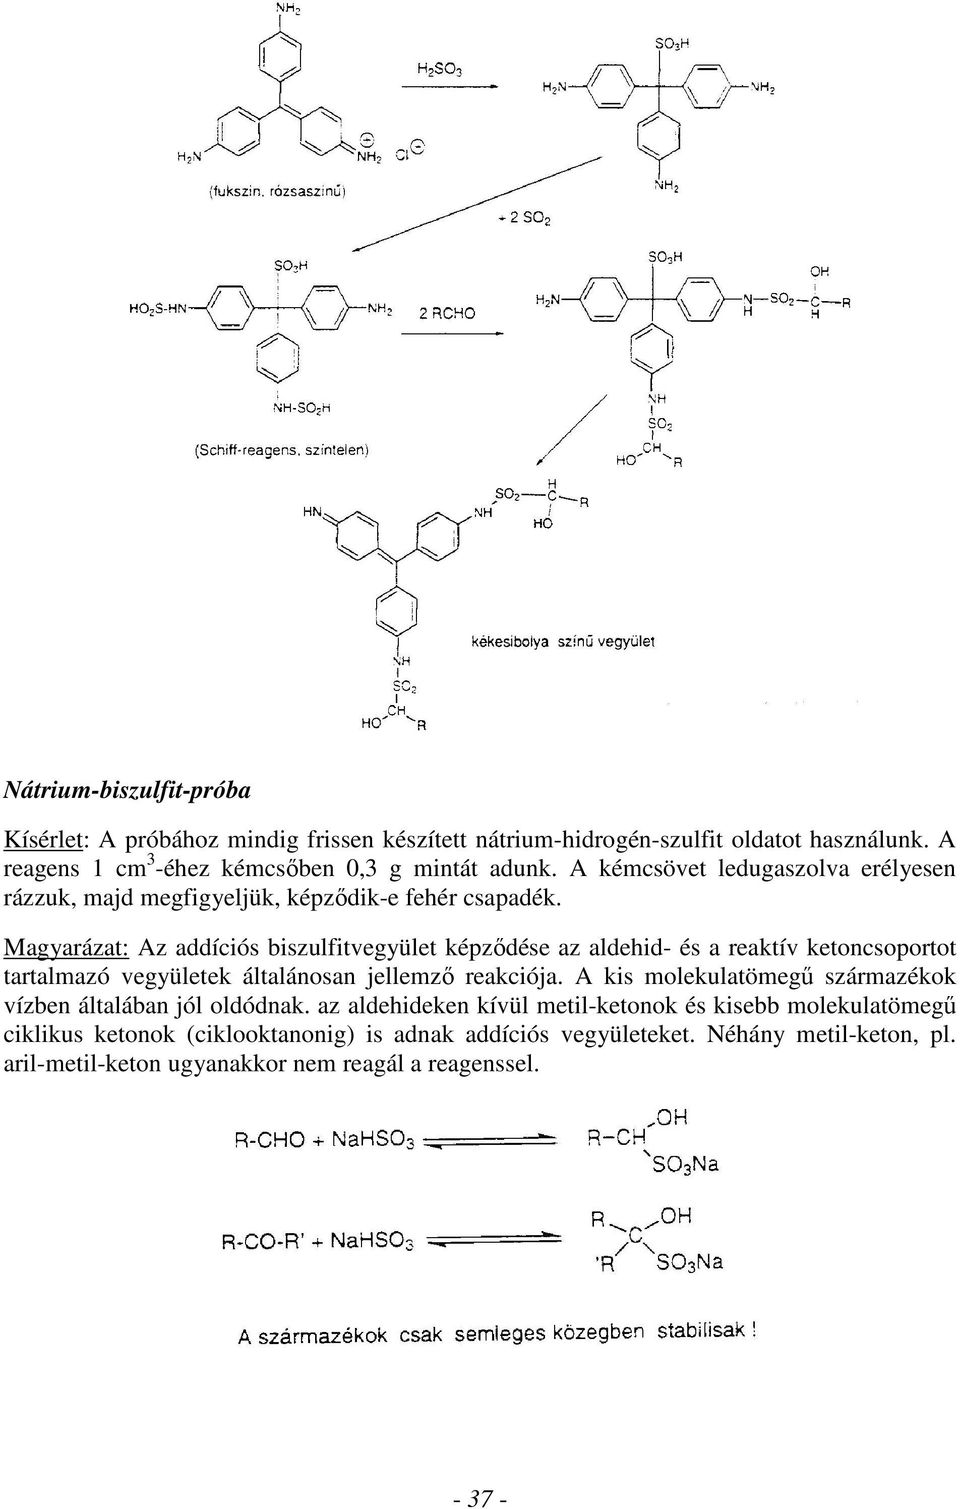 Magyarázat: Az addíciós biszulfitvegyület képződése az aldehid- és a reaktív ketoncsoportot tartalmazó vegyületek általánosan jellemző reakciója.